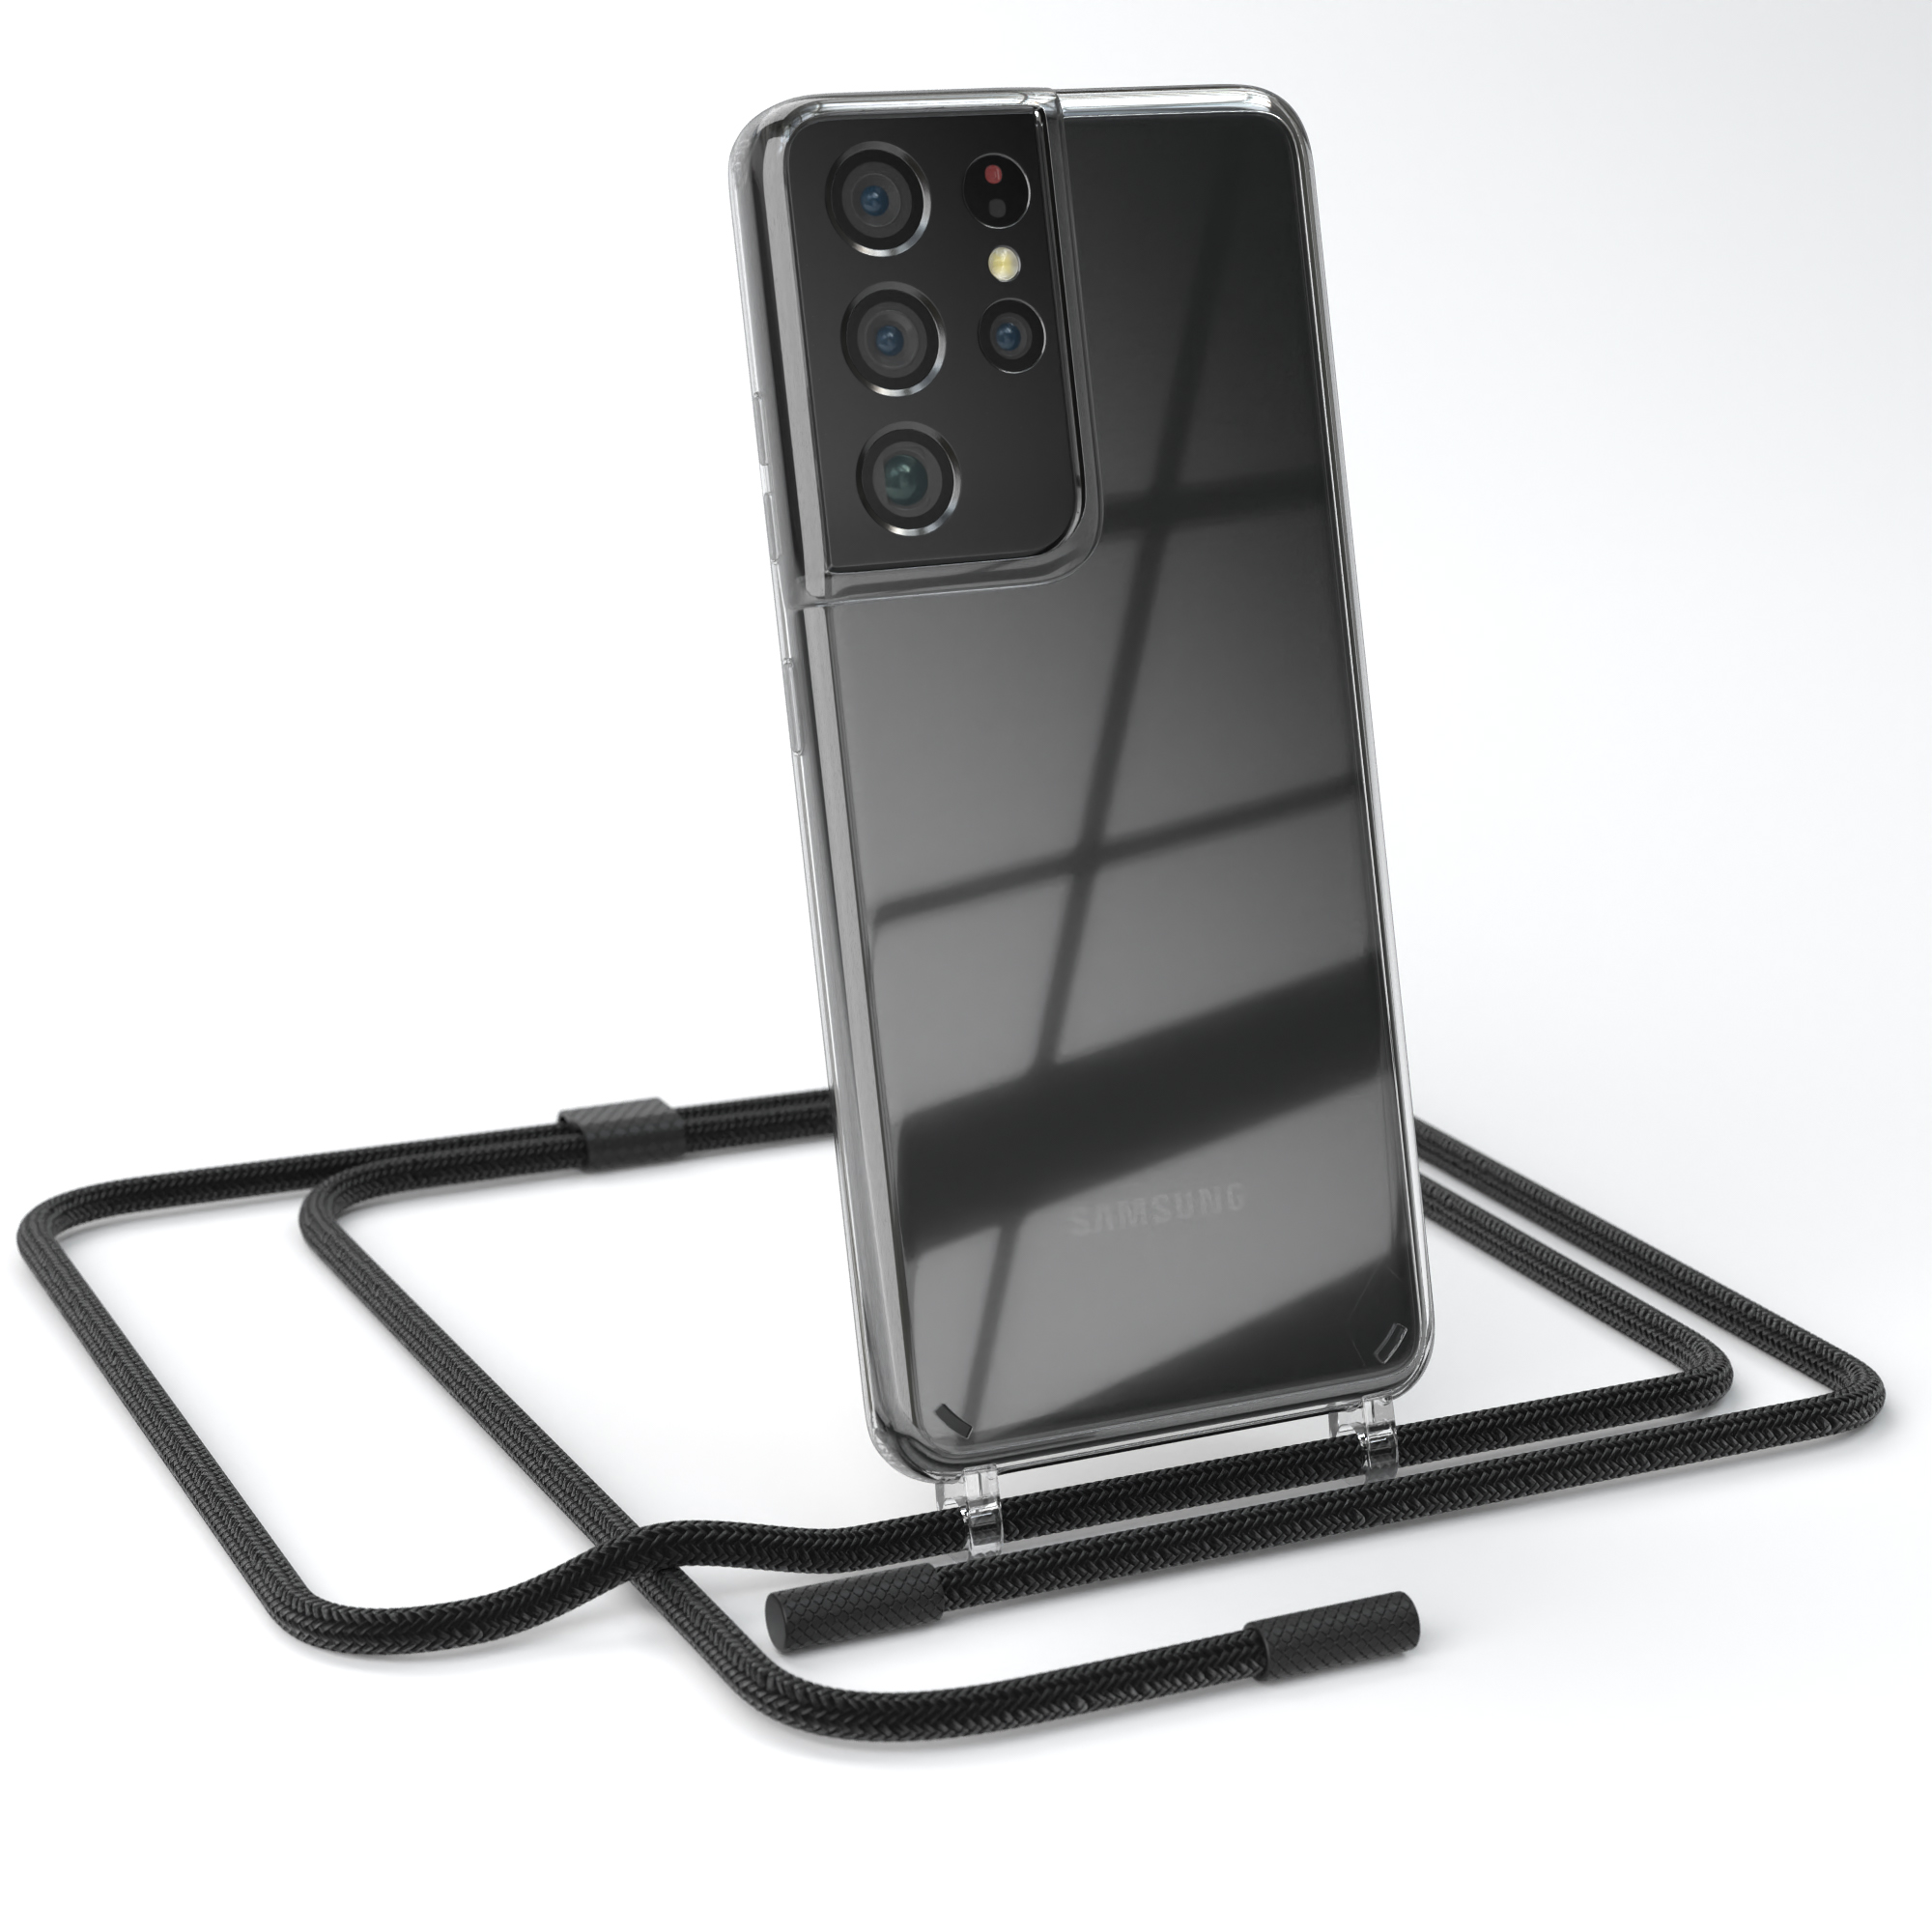 EAZY CASE Transparente Handyhülle Kette mit Galaxy unifarbend, Umhängetasche, Ultra runder S21 5G, Schwarz Samsung